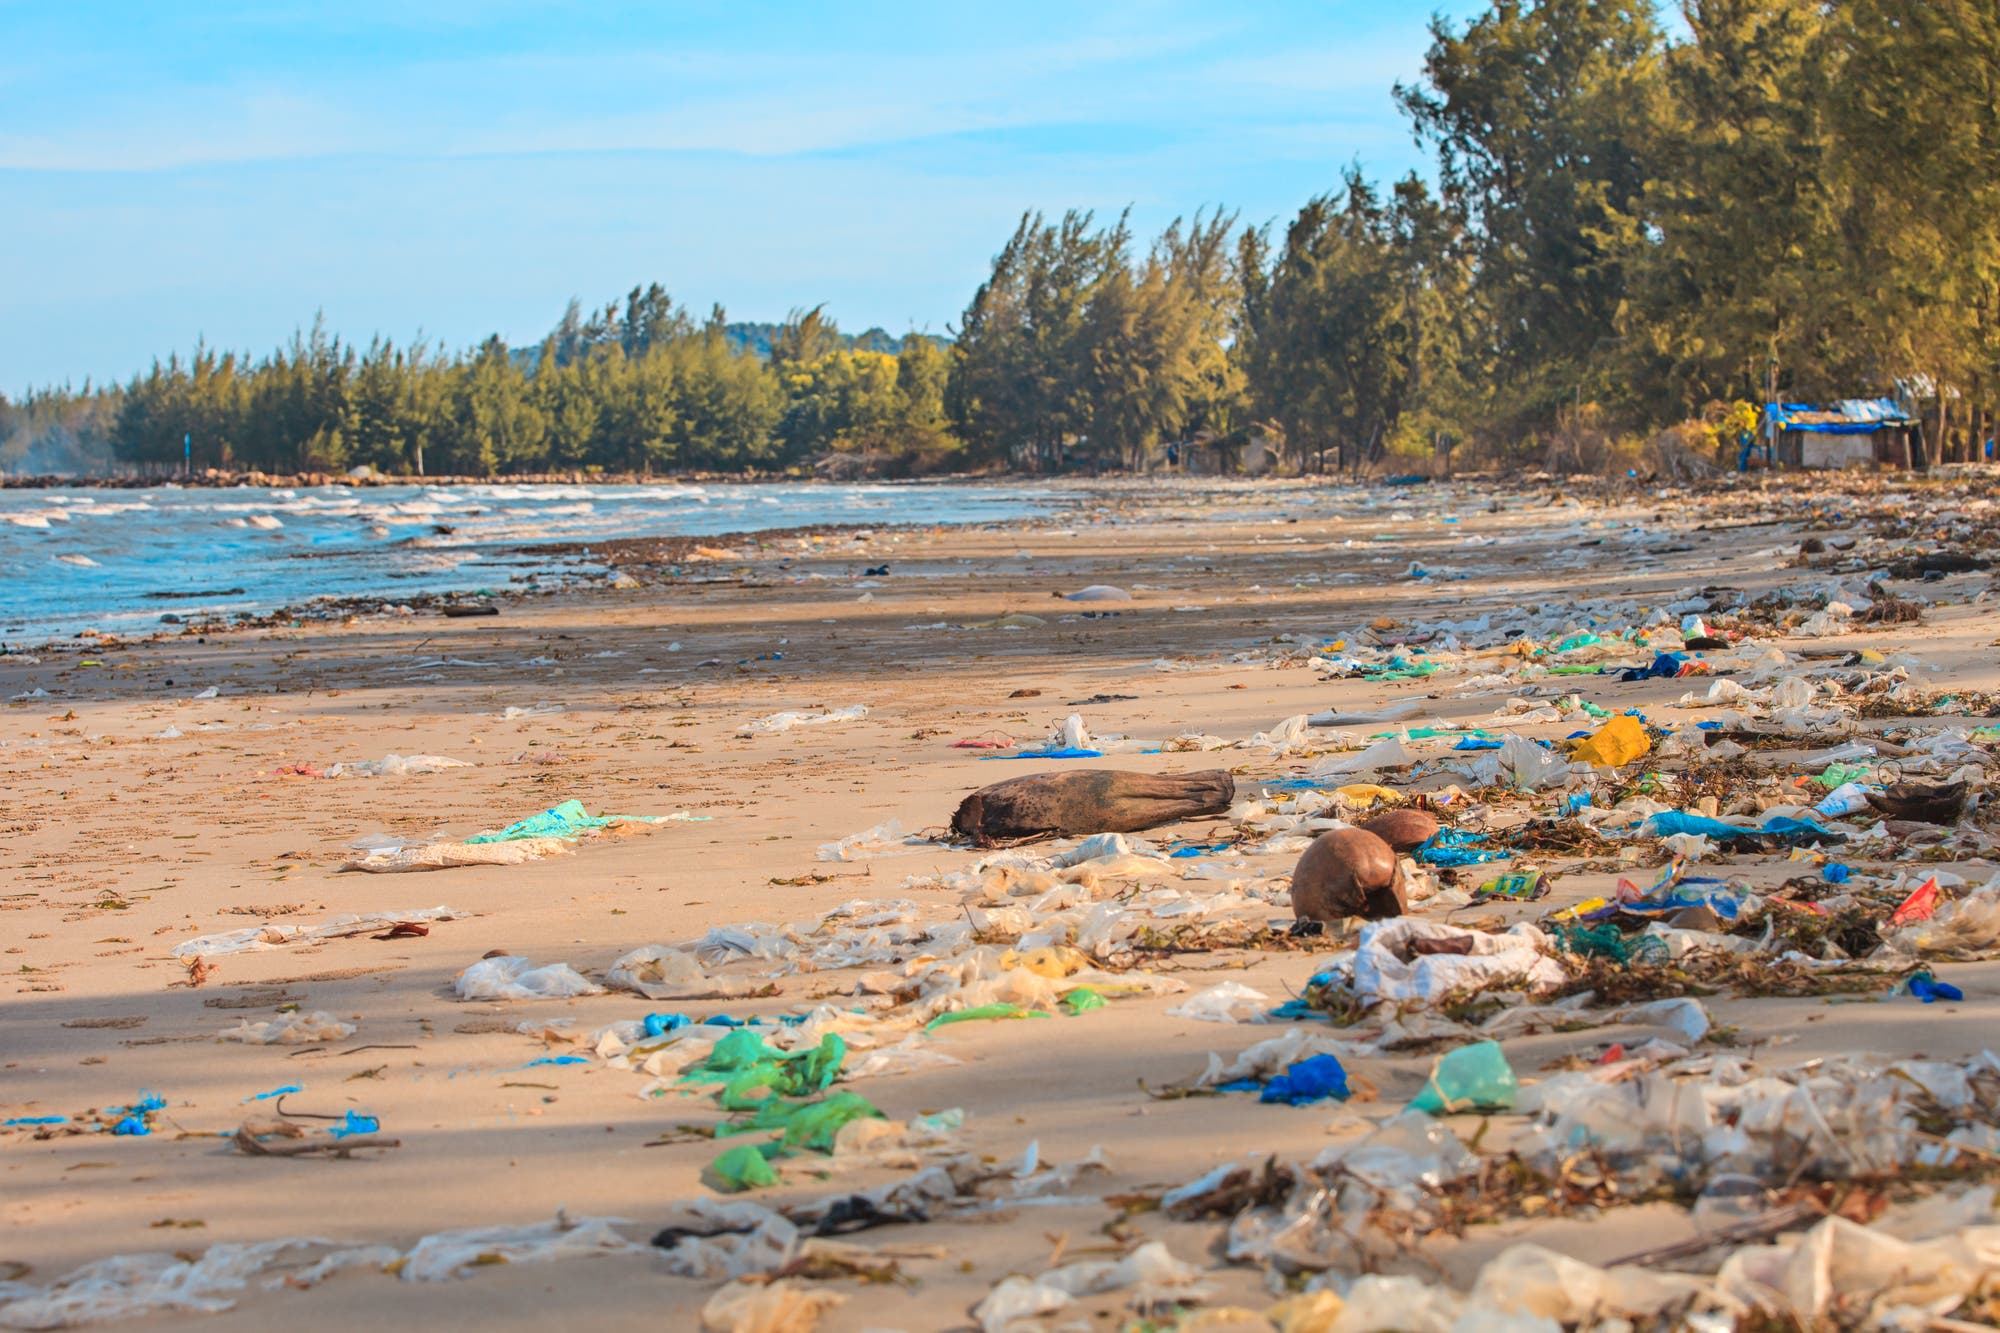 Erhöhte Aufmerksamkeit erhielt in den letzten Jahren das Thema "Plastikmüll im Meer": Billionen Kunststoffteilchen verschiedenster Größe treiben mittlerweile in den Ozeanen, sanken bereits in die Tiefsee oder verschmutzen die Strände.